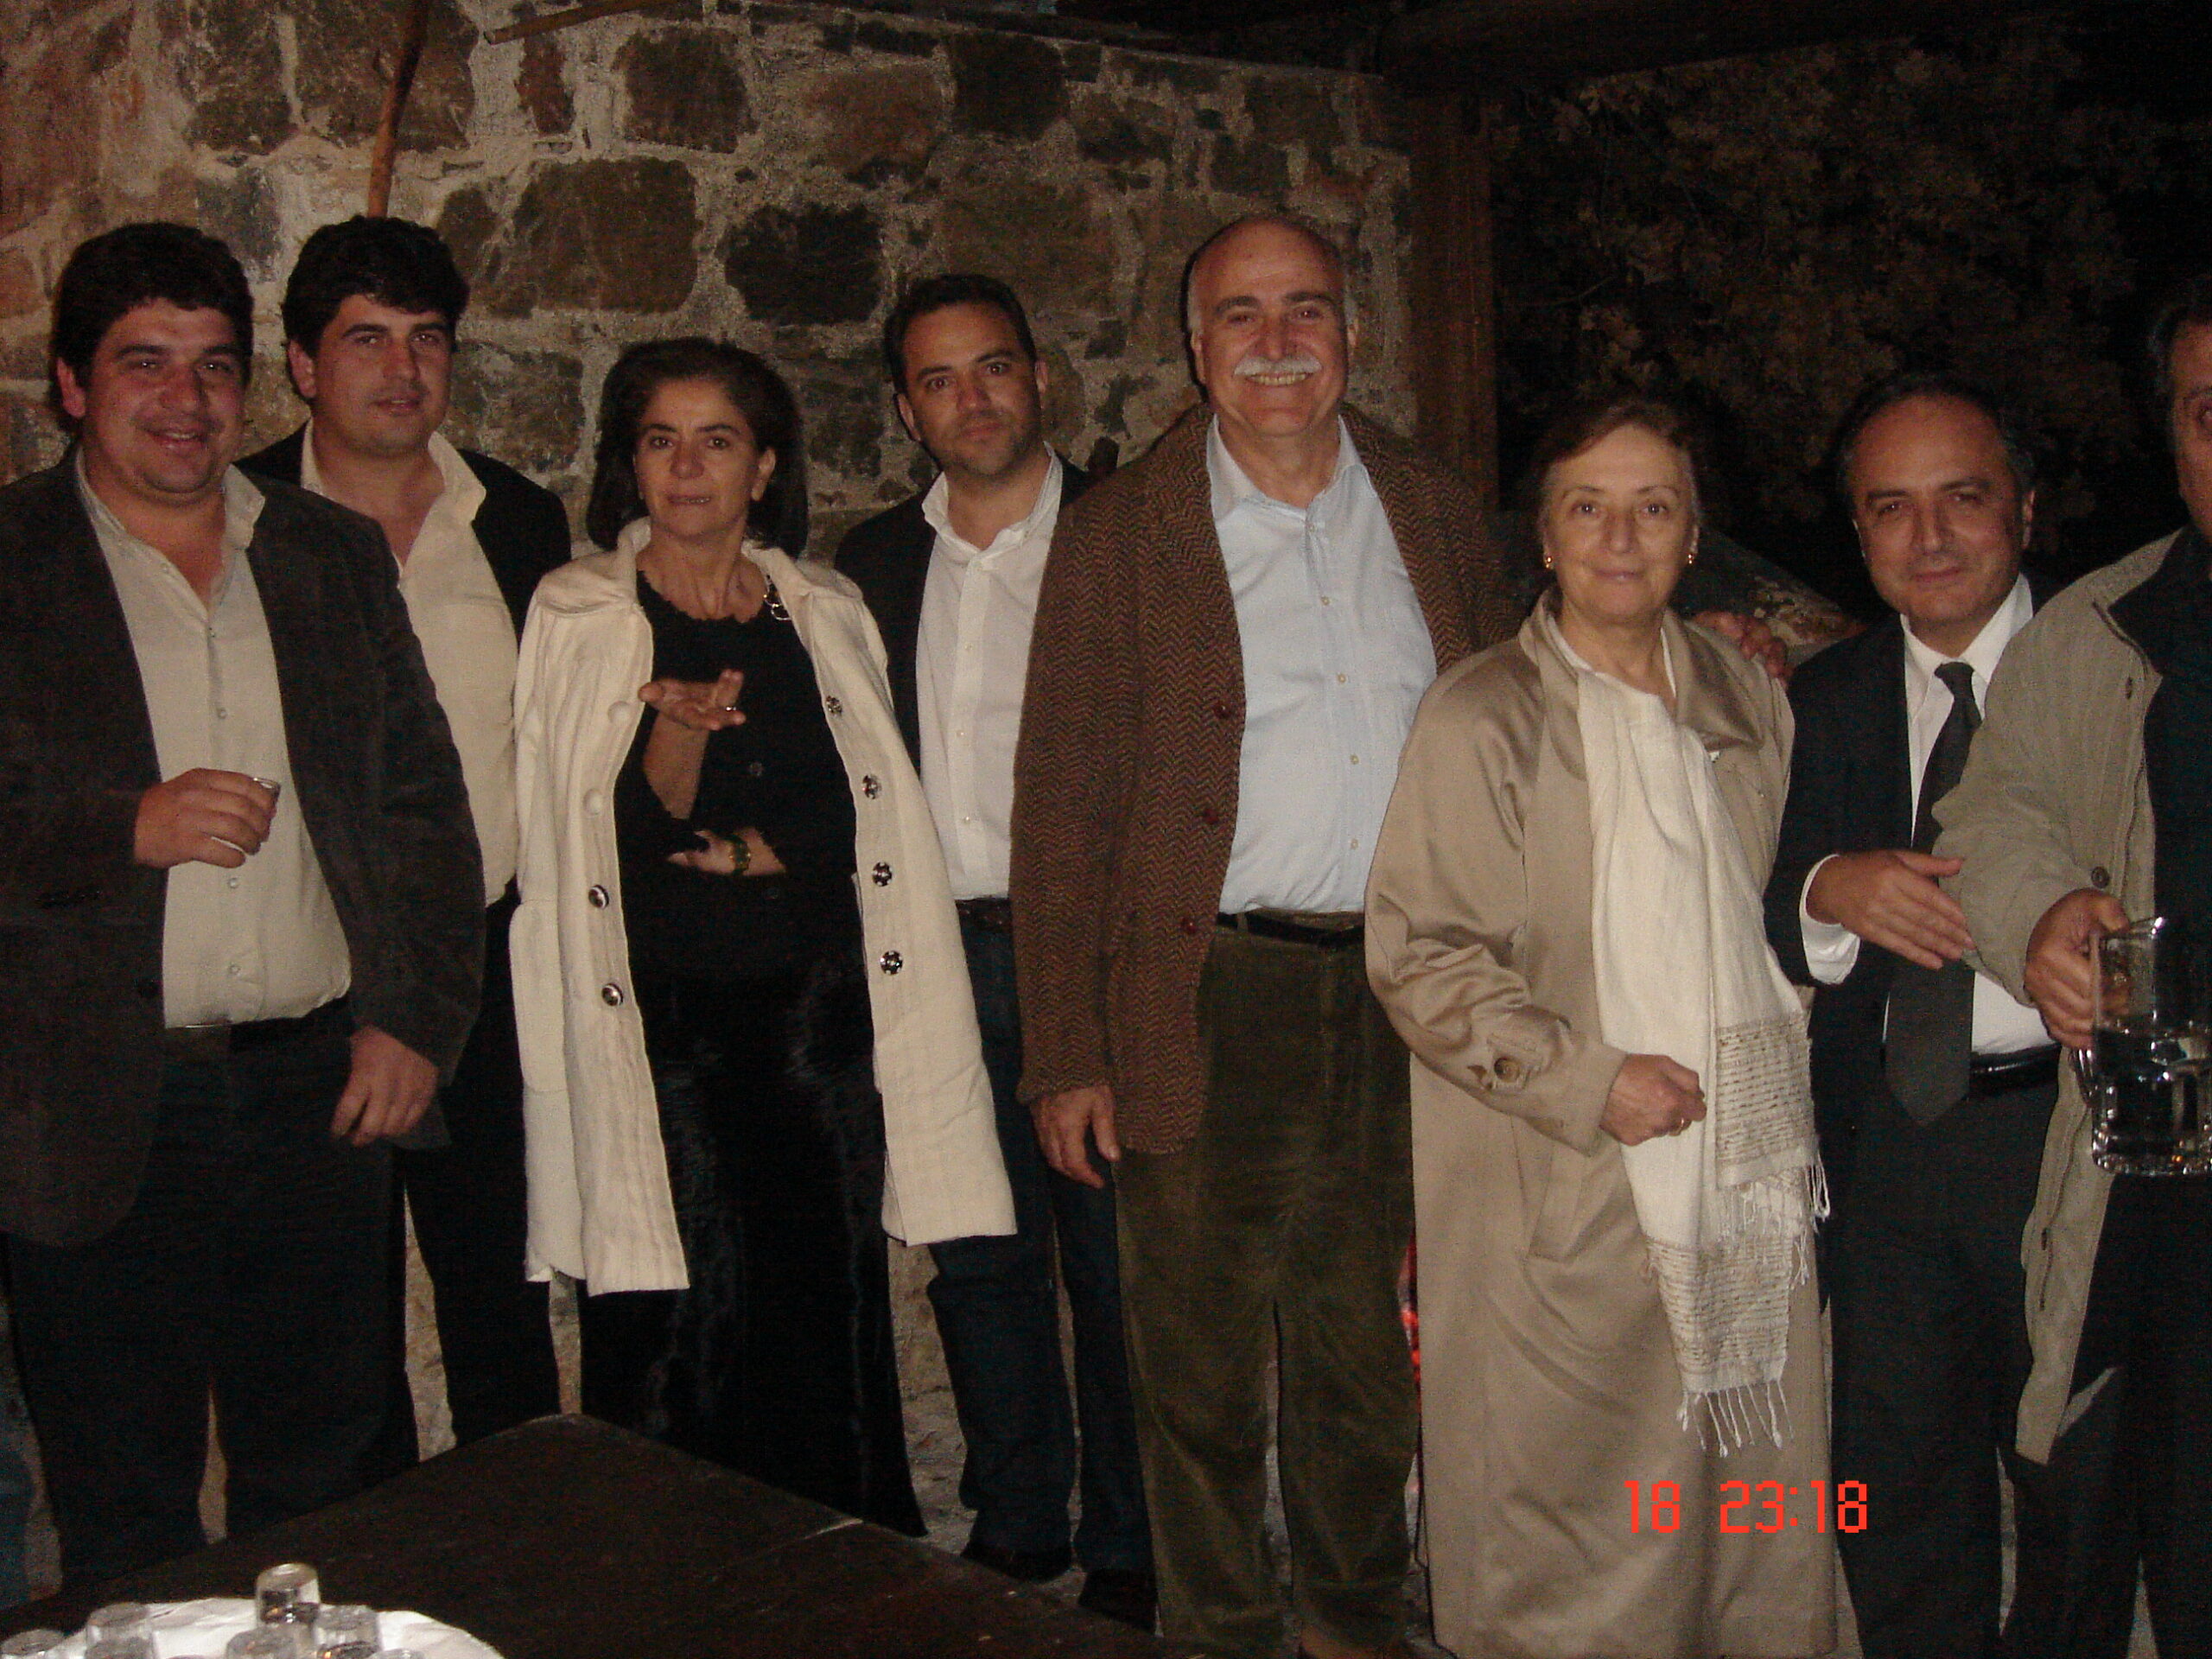 1η συνάντηση ιδρυτικών μελών ΠτΟ – Μοναστήρι Βωσάκου, Μυλοπόταμος Ρεθύμνης, Δεκέμβριος 2008